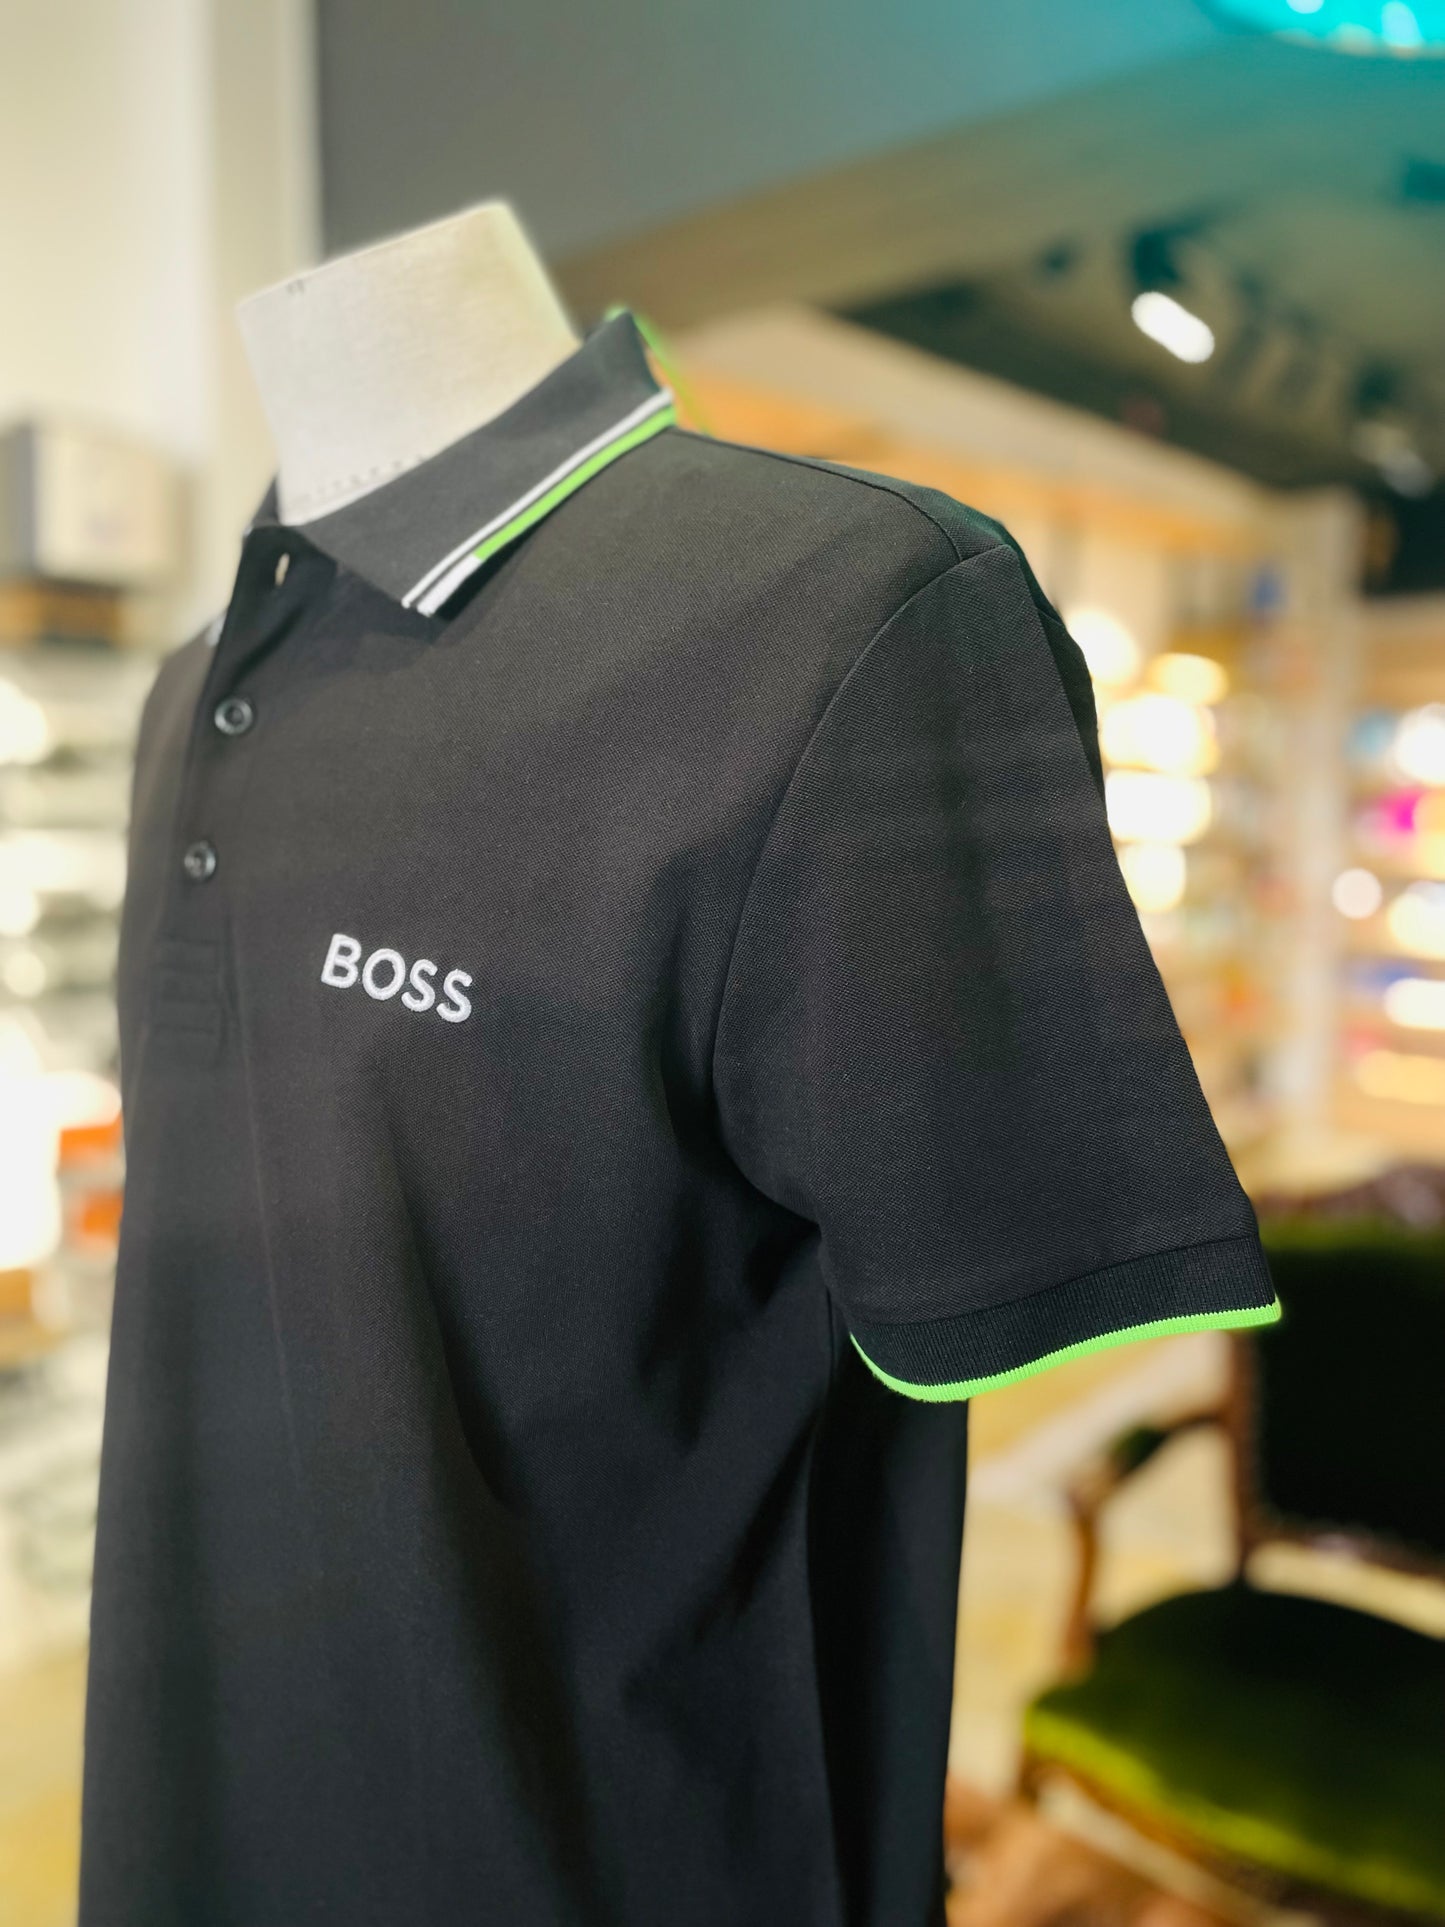 Boss men’s shirt